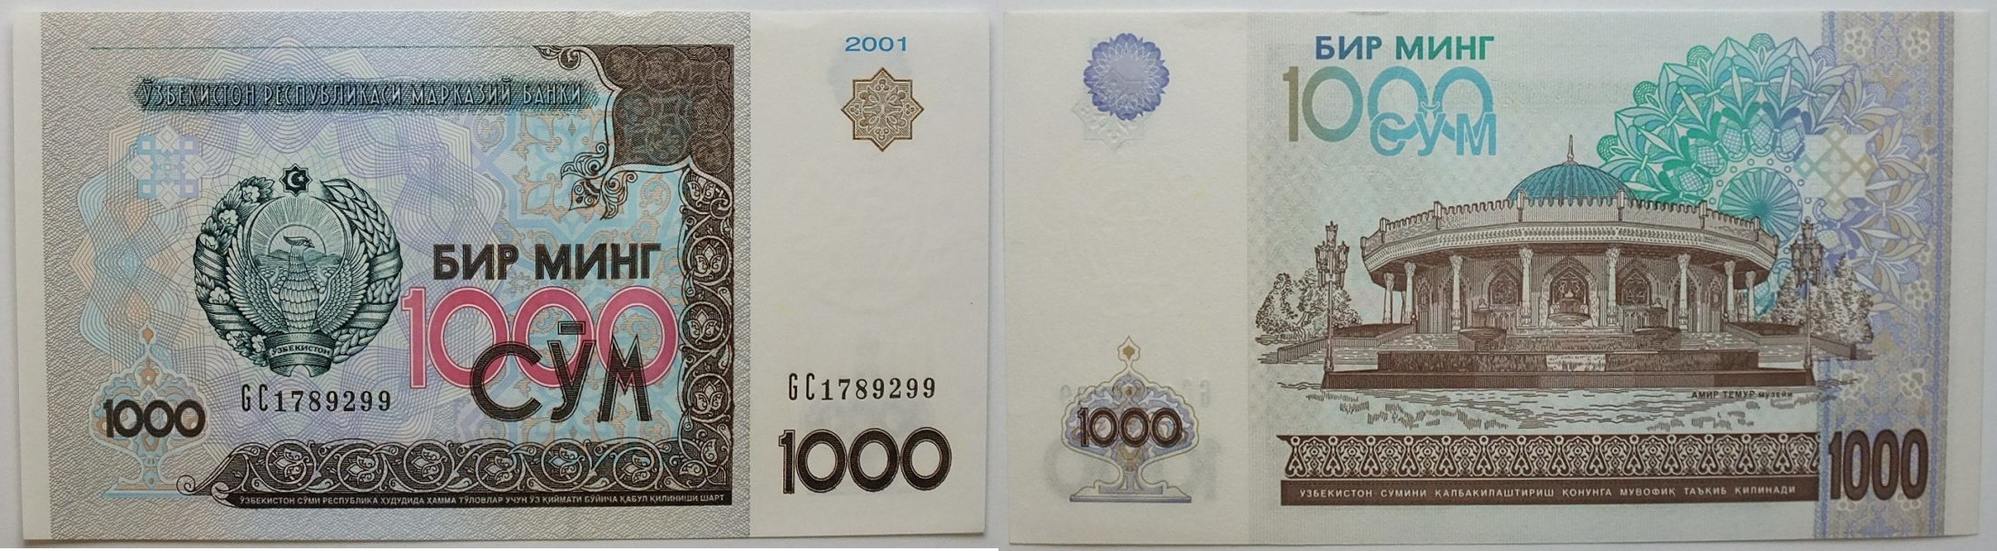 1000 р сум. Бир минг сум. Узбекские деньги 1000. Бир минг 1000 сум. Узбекские деньги 1000 сум 2001.